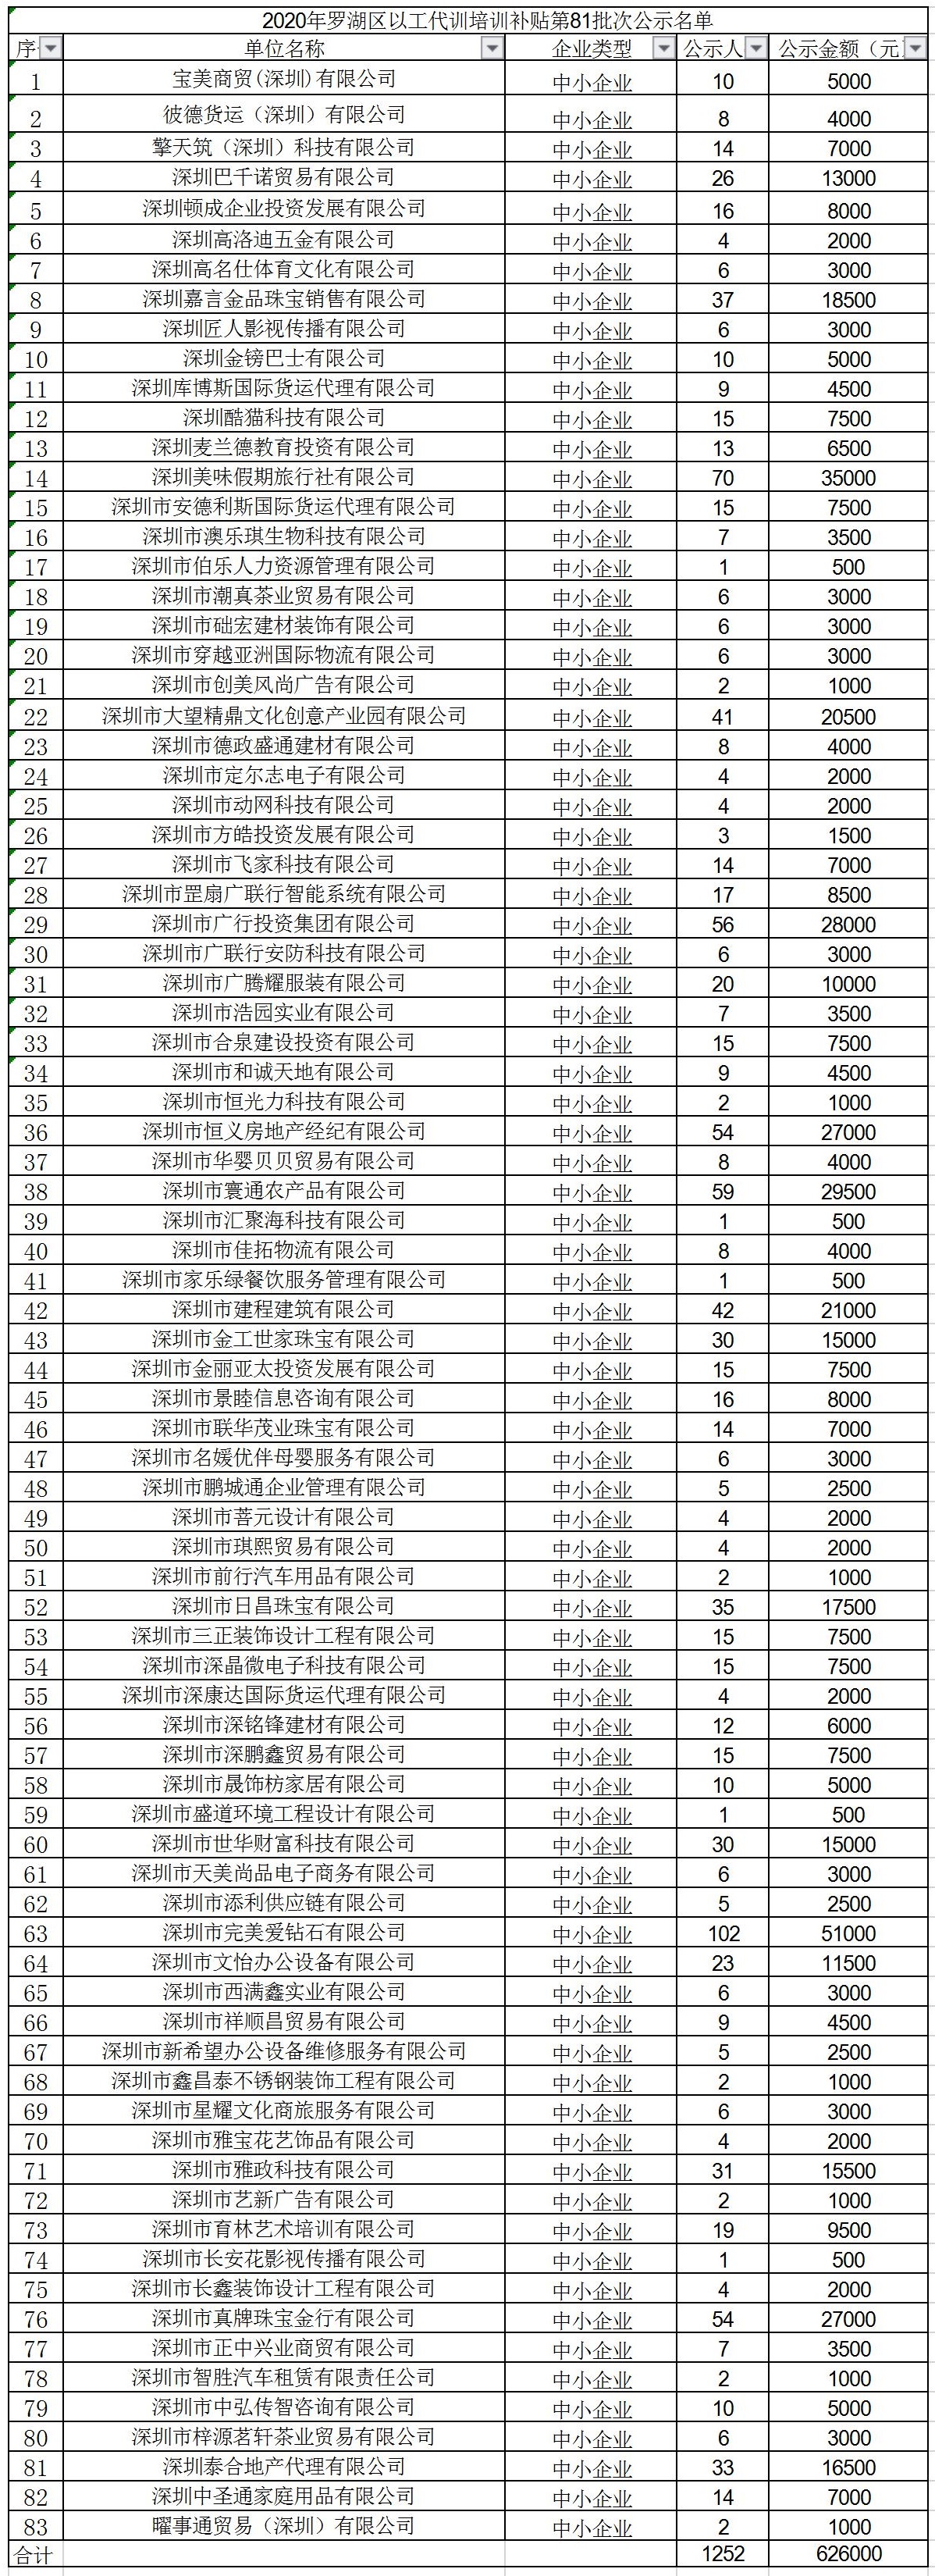 2020年深圳市罗湖区以工代训培训补贴第81批次公示名单.jpg